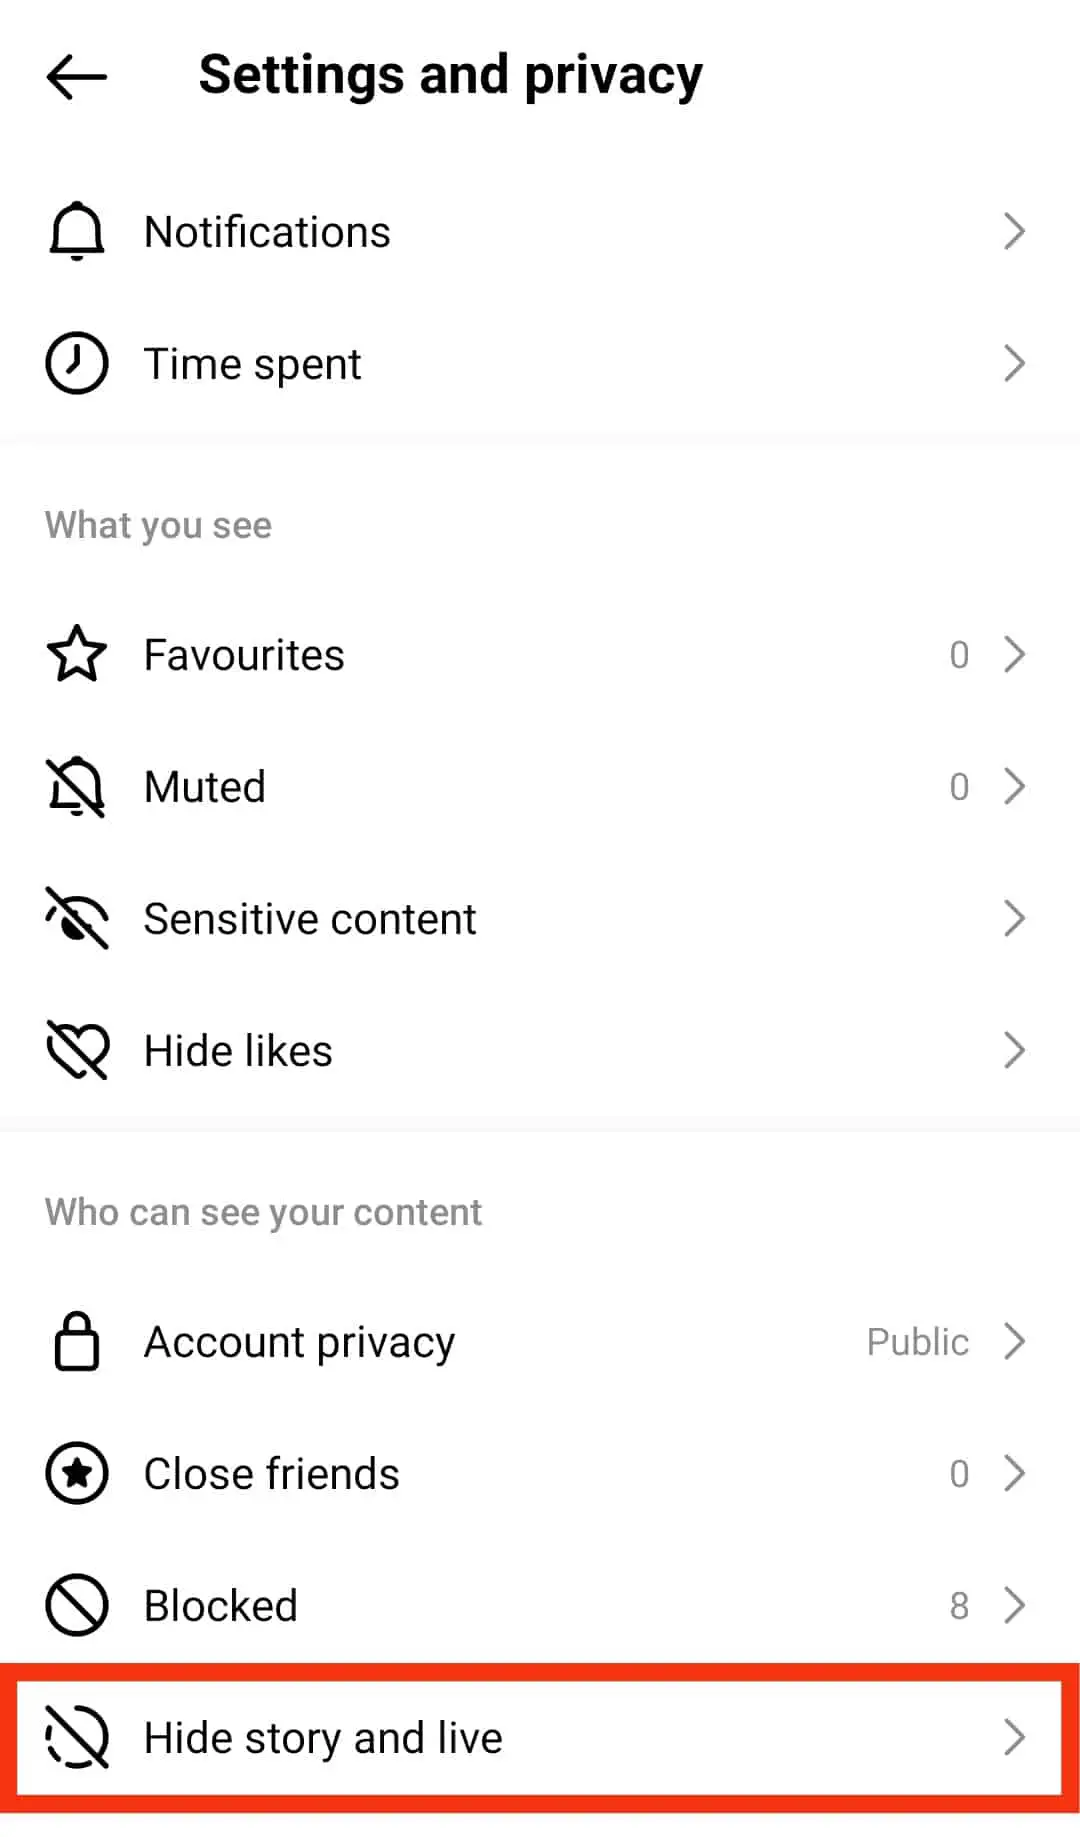 Cómo agregar destacados en Instagram sin publicar